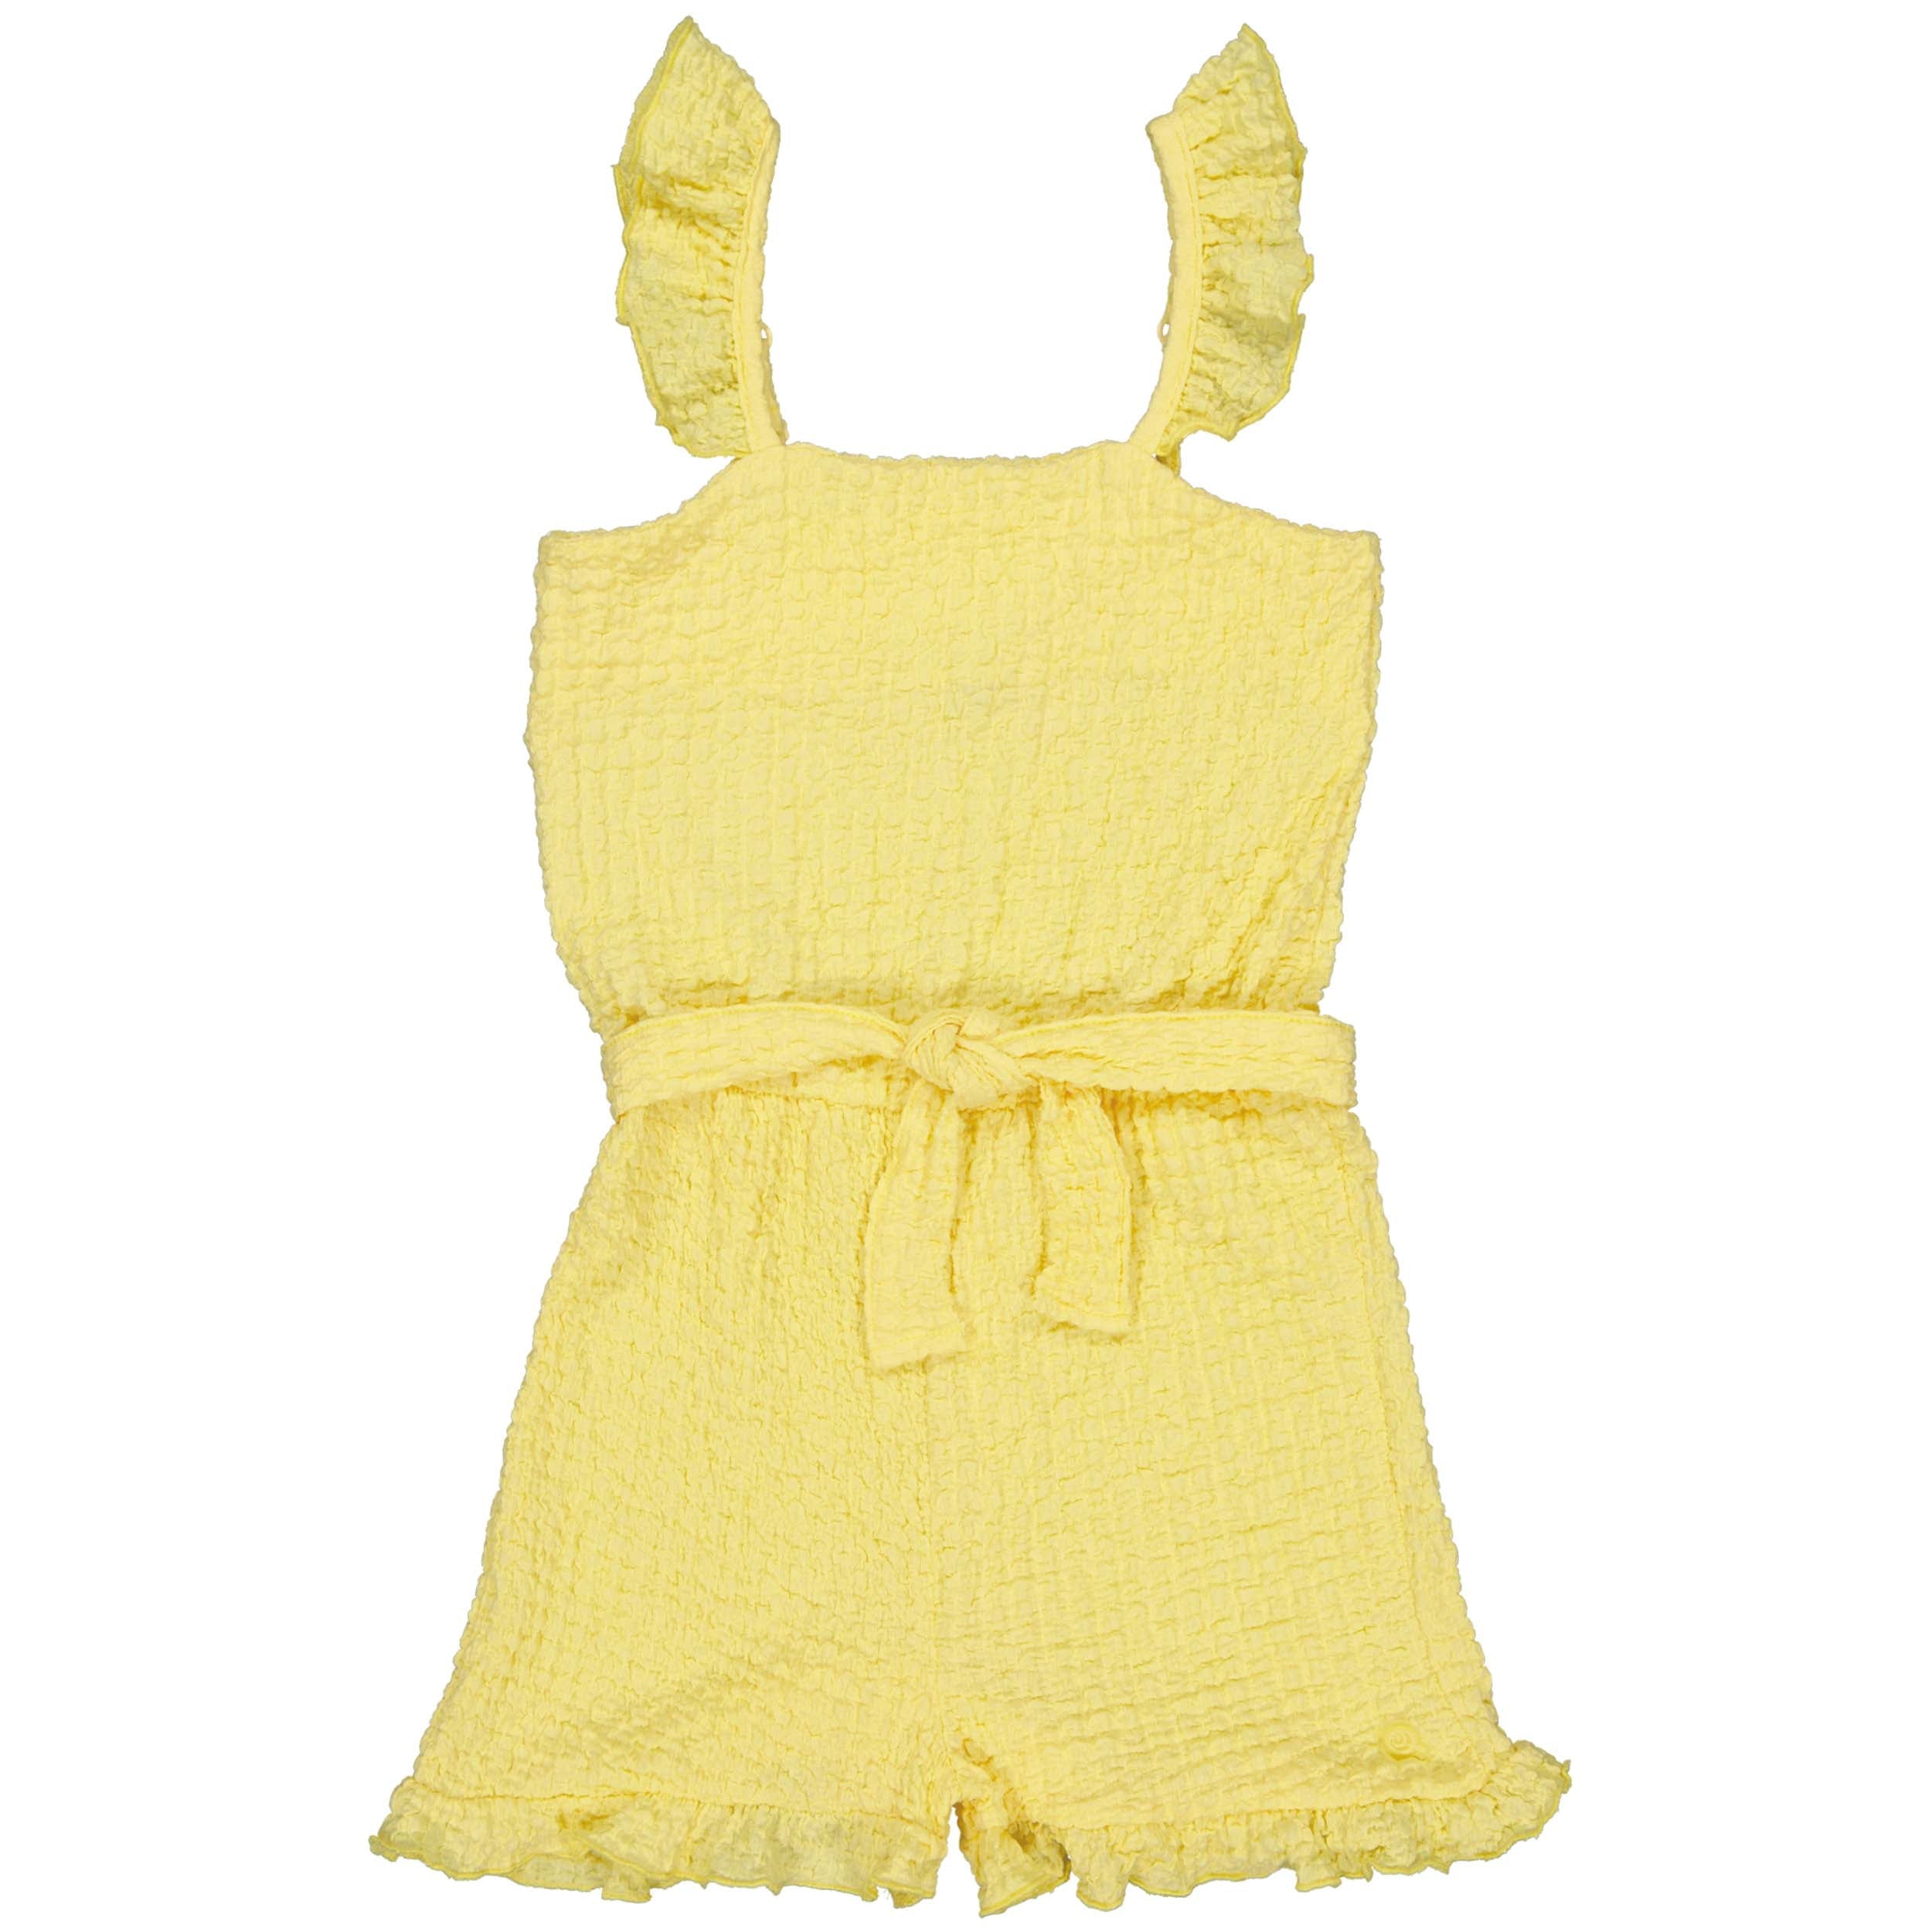 Meisjes Playsuit BETTYQS243 van Quapi in de kleur Soft Yellow in maat 122-128.